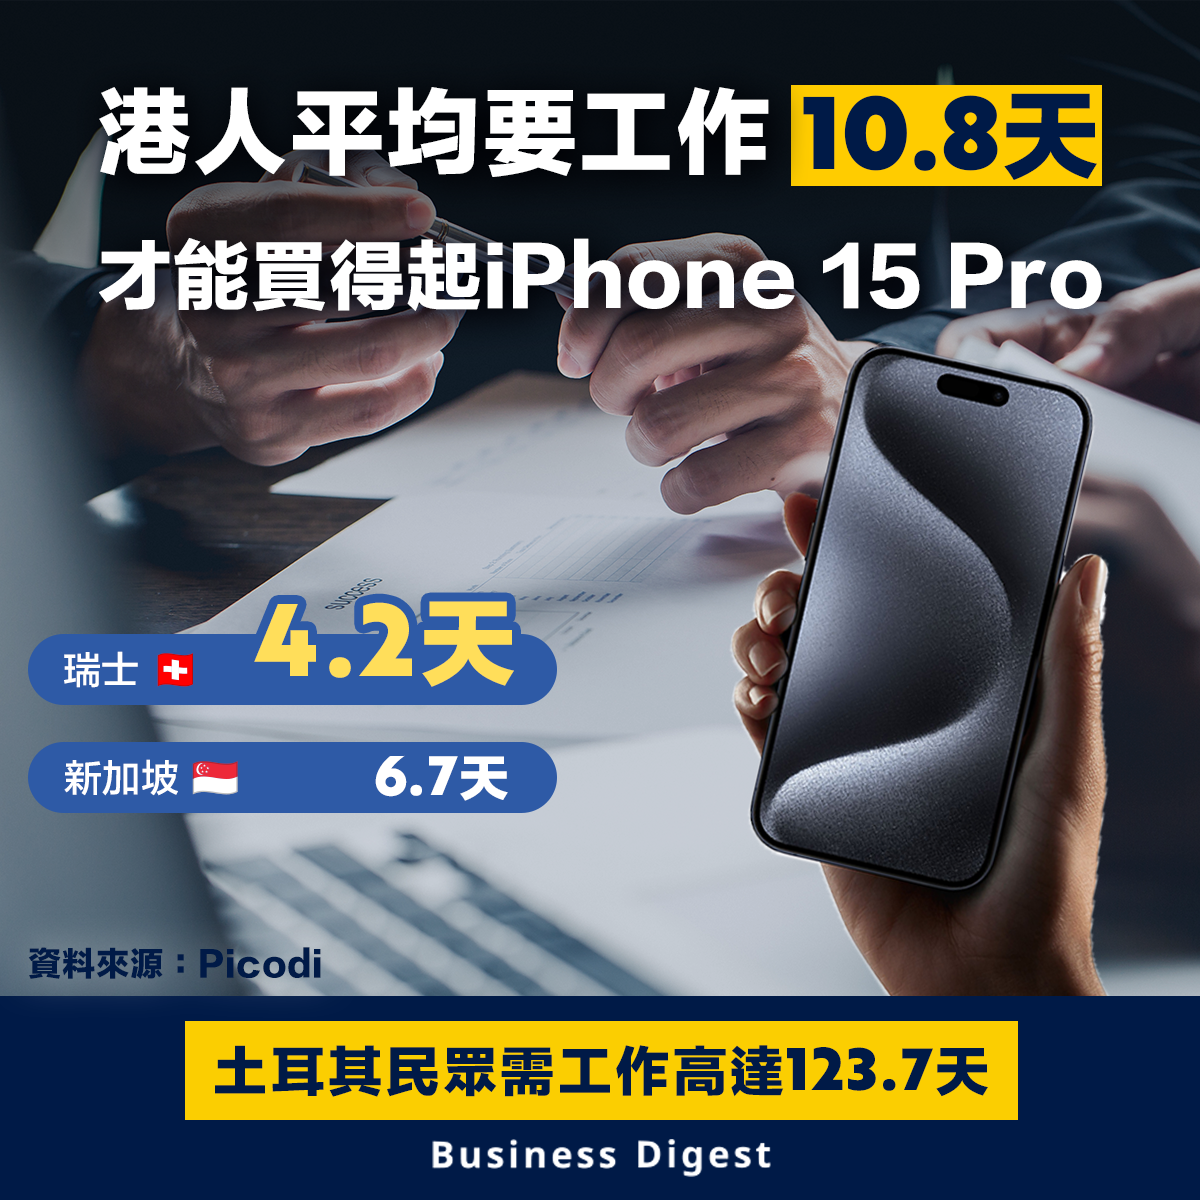 【iPhone15】港人平均要工作10.8天才能買得起iPhone 15 Pro